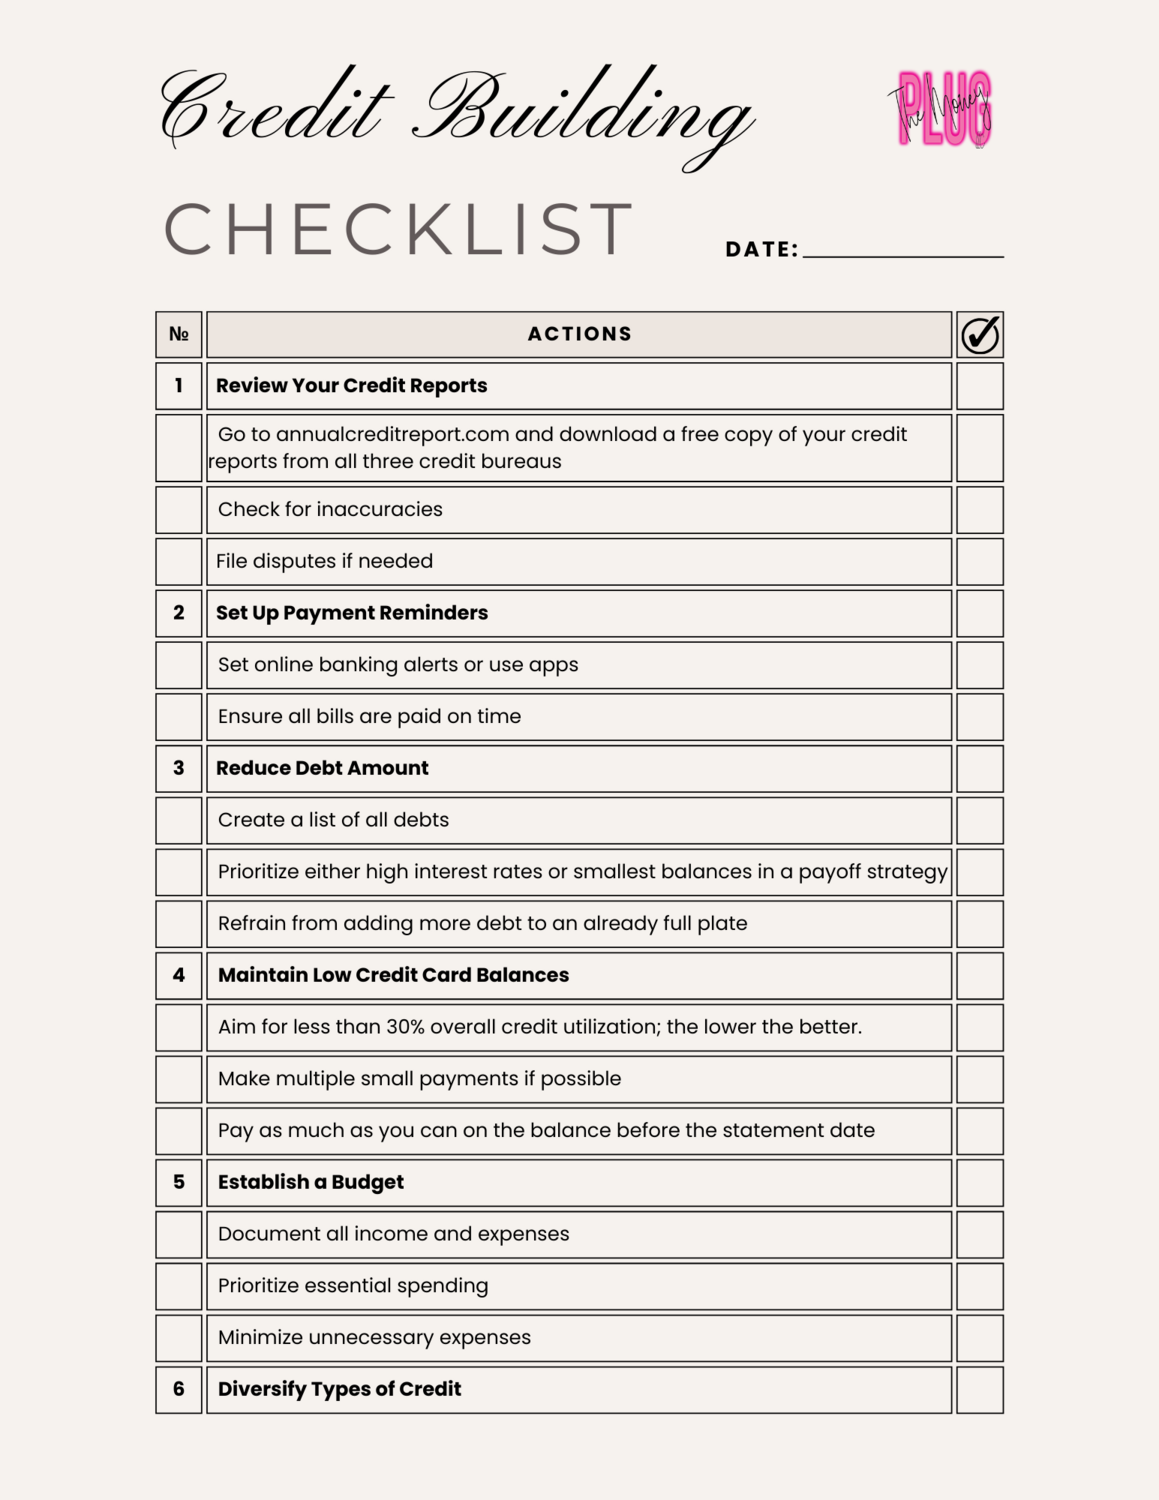 Credit Building Checklist